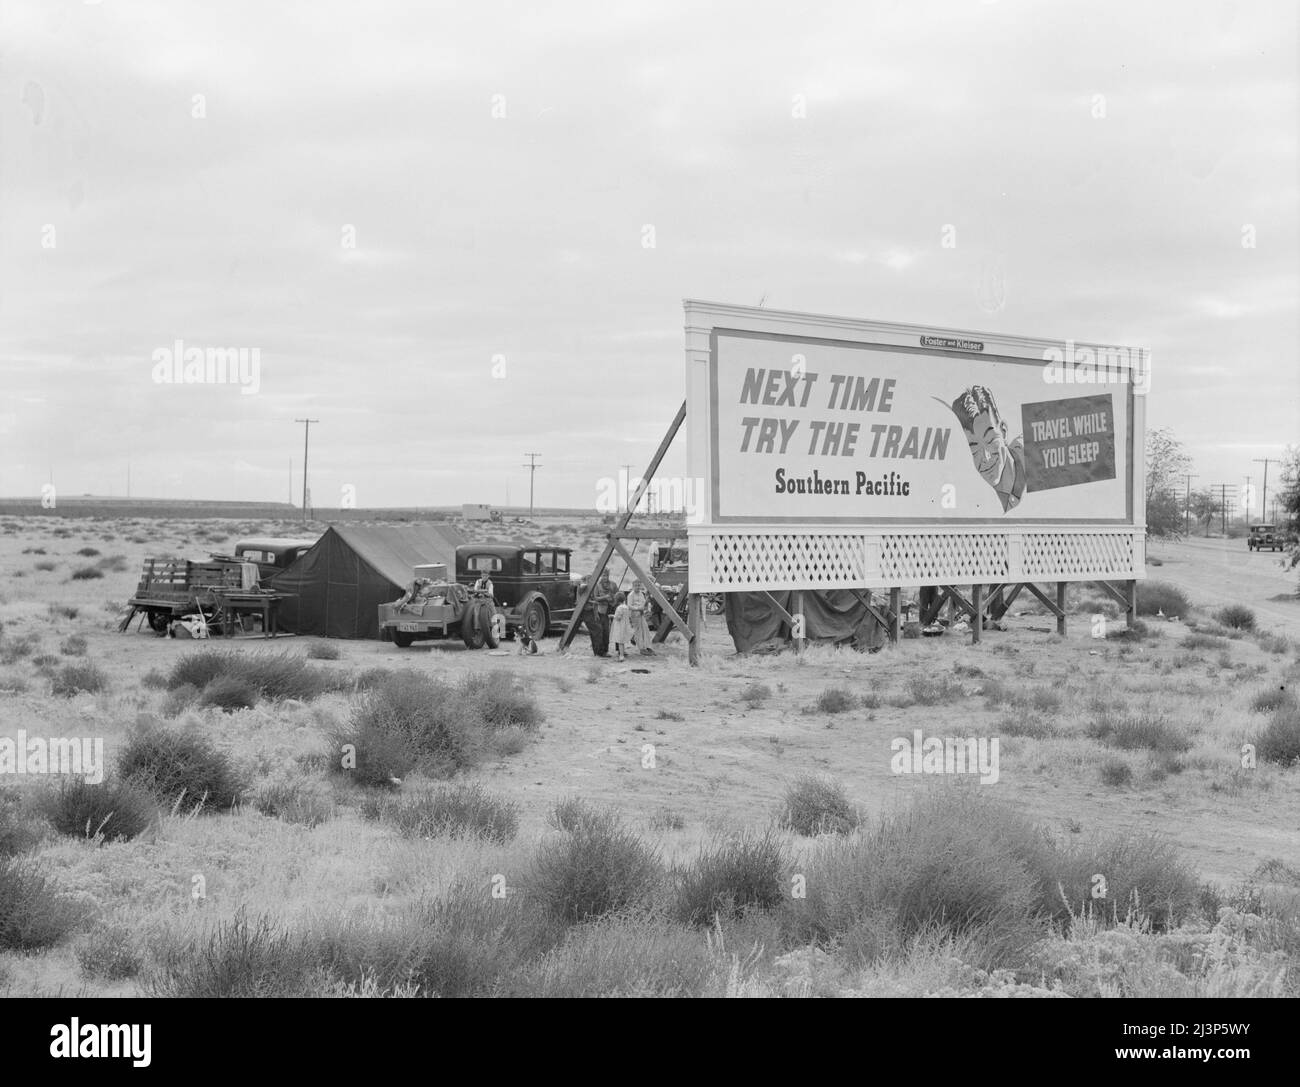 Panneaux le long des États-Unis 99 derrière lesquels trois familles de migrants indigents sont campés. Kern County, Californie. [Annonce: 'Prochaine fois essayez le train - Voyage pendant que vous dormez - Pacifique Sud']. Banque D'Images